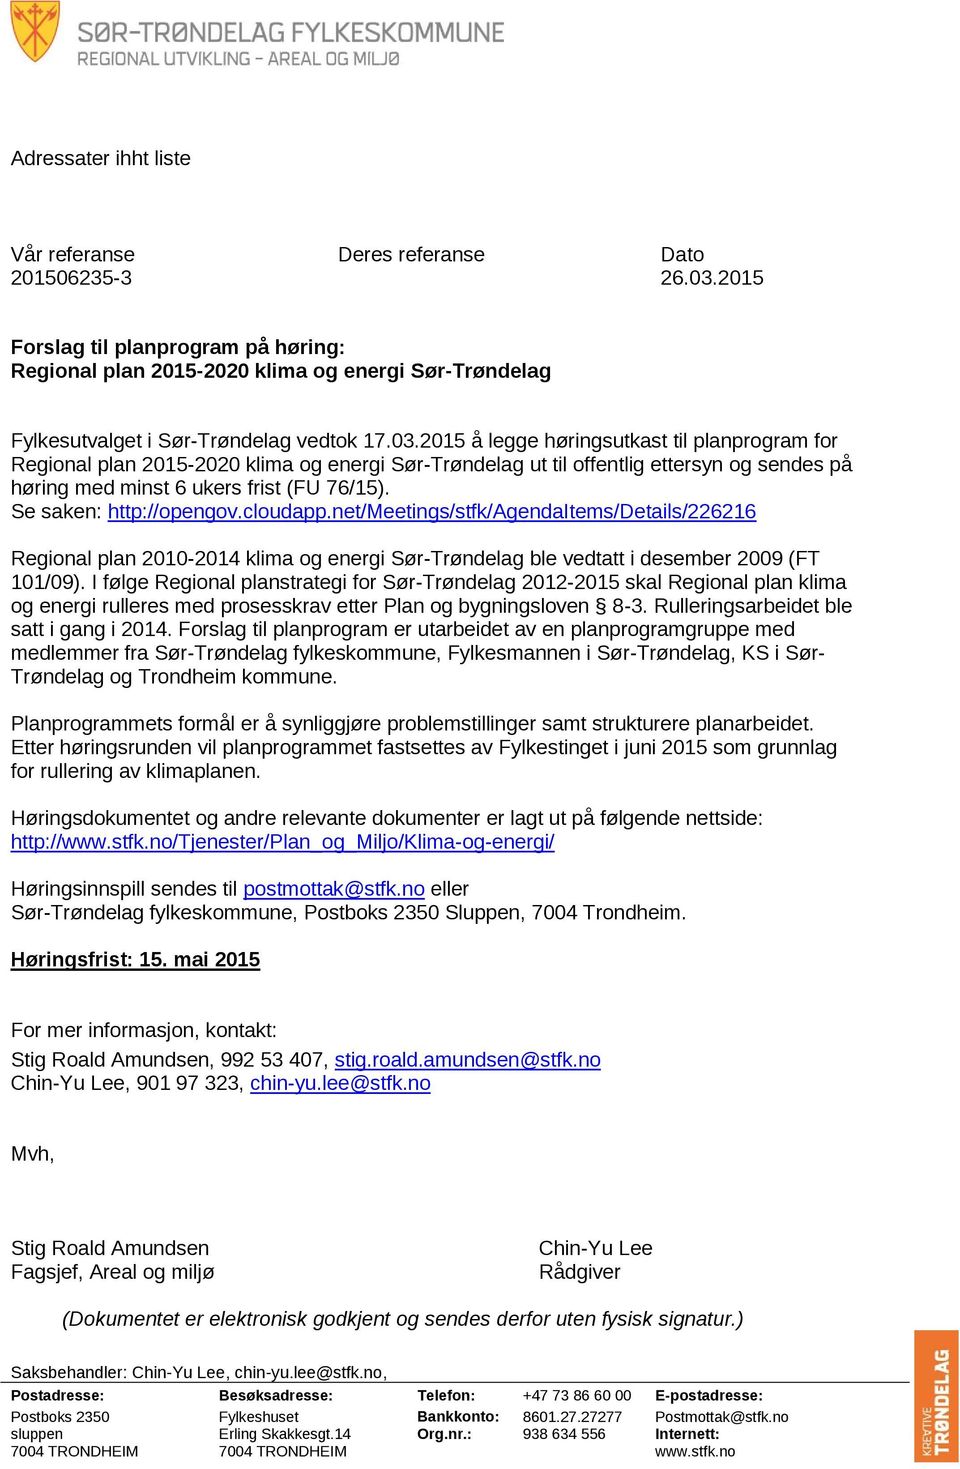 2015 å legge høringsutkast til planprogram for Regional plan 2015-2020 klima og energi Sør-Trøndelag ut til offentlig ettersyn og sendes på høring med minst 6 ukers frist (FU 76/15).